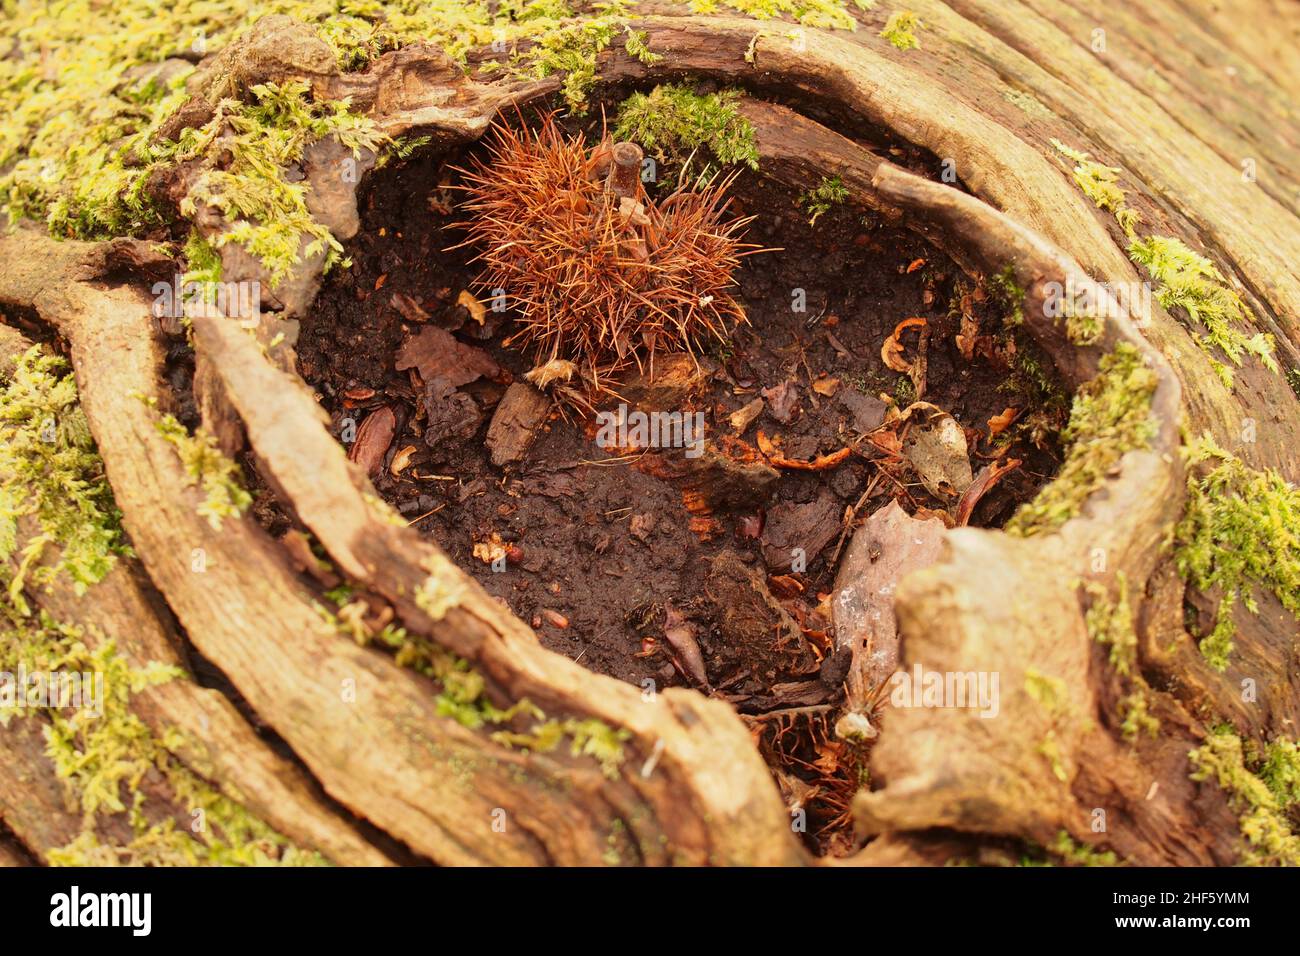 En regardant dans le trou laissé sur un tronc de châtaignier mort, avec lichen, après qu'une branche s'est cassée et que les débris de bois d'hiver se sont accumulés Banque D'Images